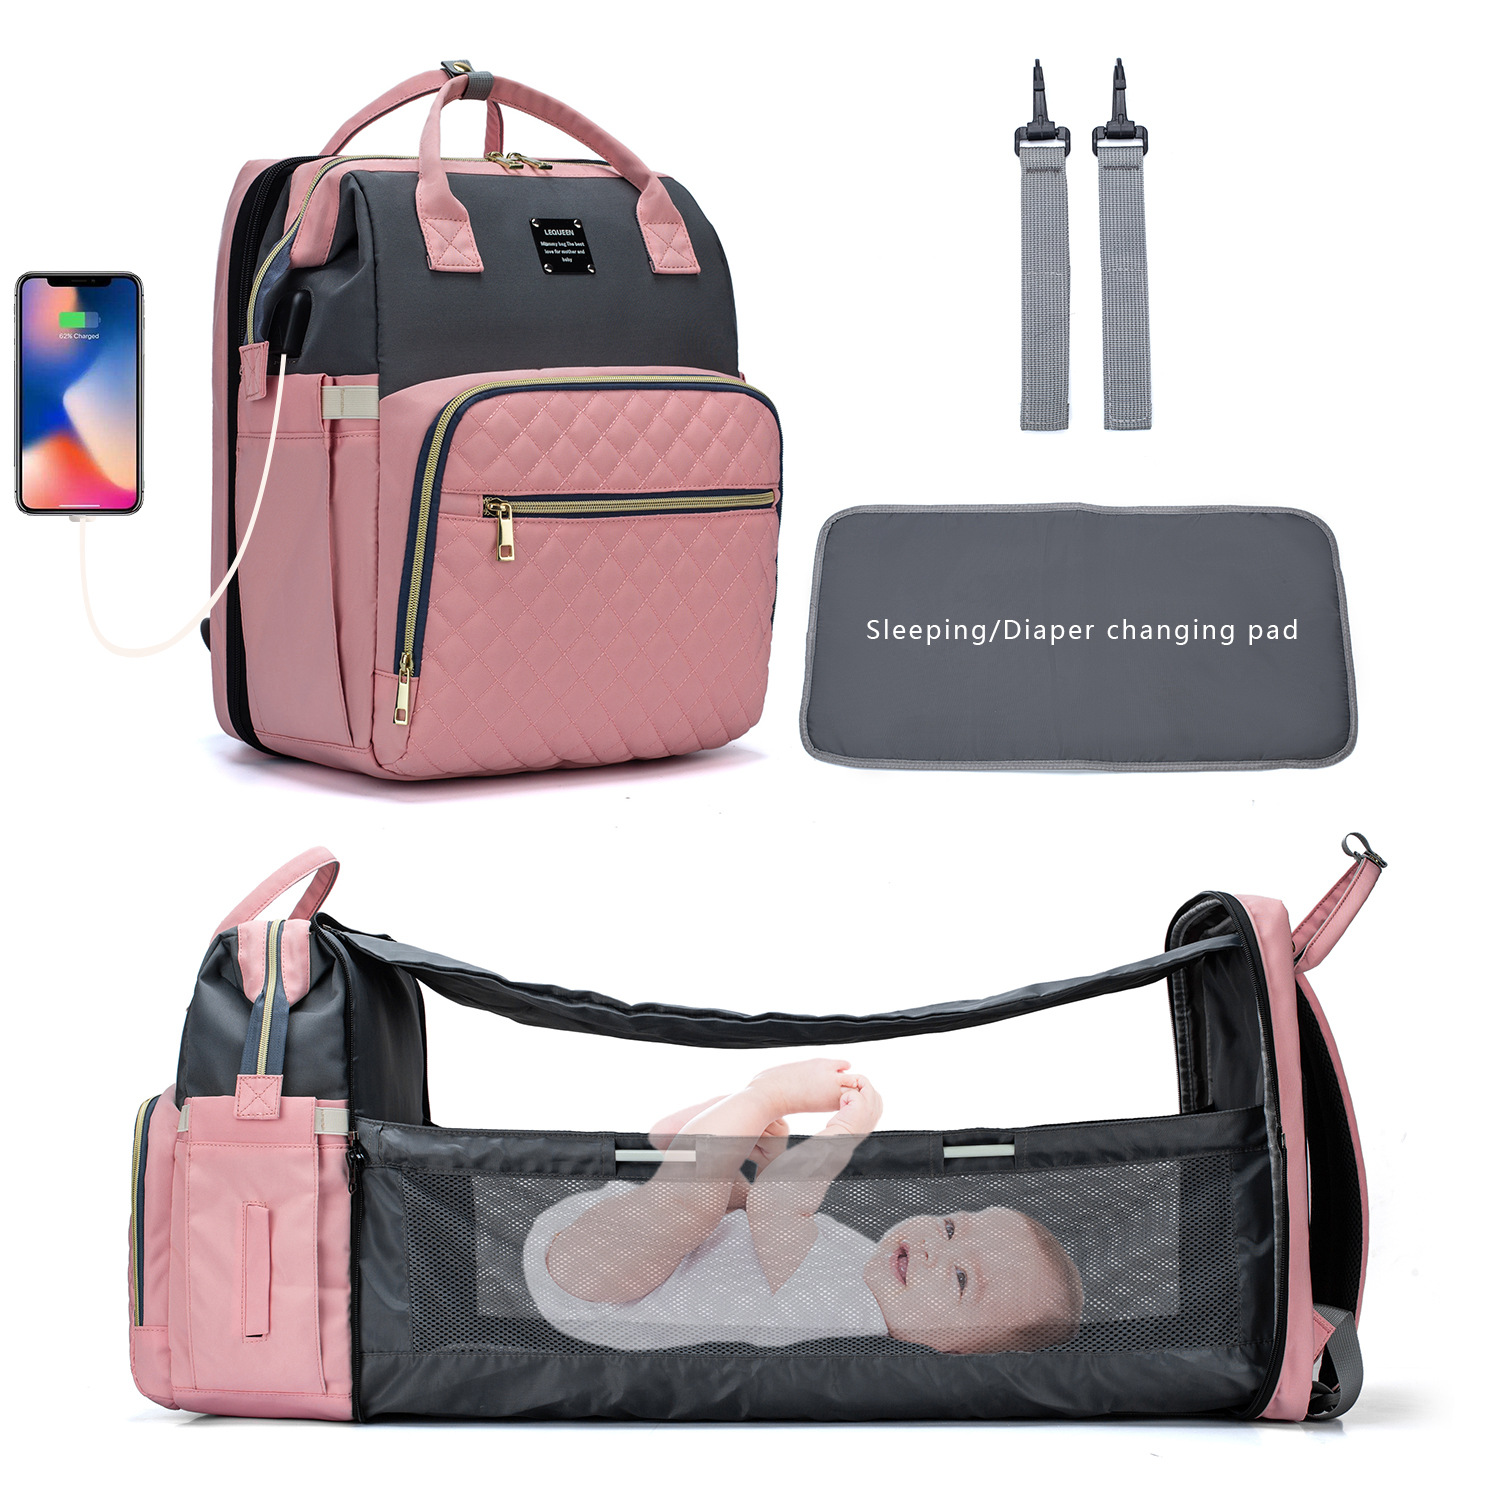 5 Renk Mumm Memm Memmalık Yeni Taşınabilir Katlanabilir Yemleme Çanta Seyahat Sırt Çantası Tasarımcı Hemşirelik Çantası Bebek Bakımı Bebek Bezi Çantaları